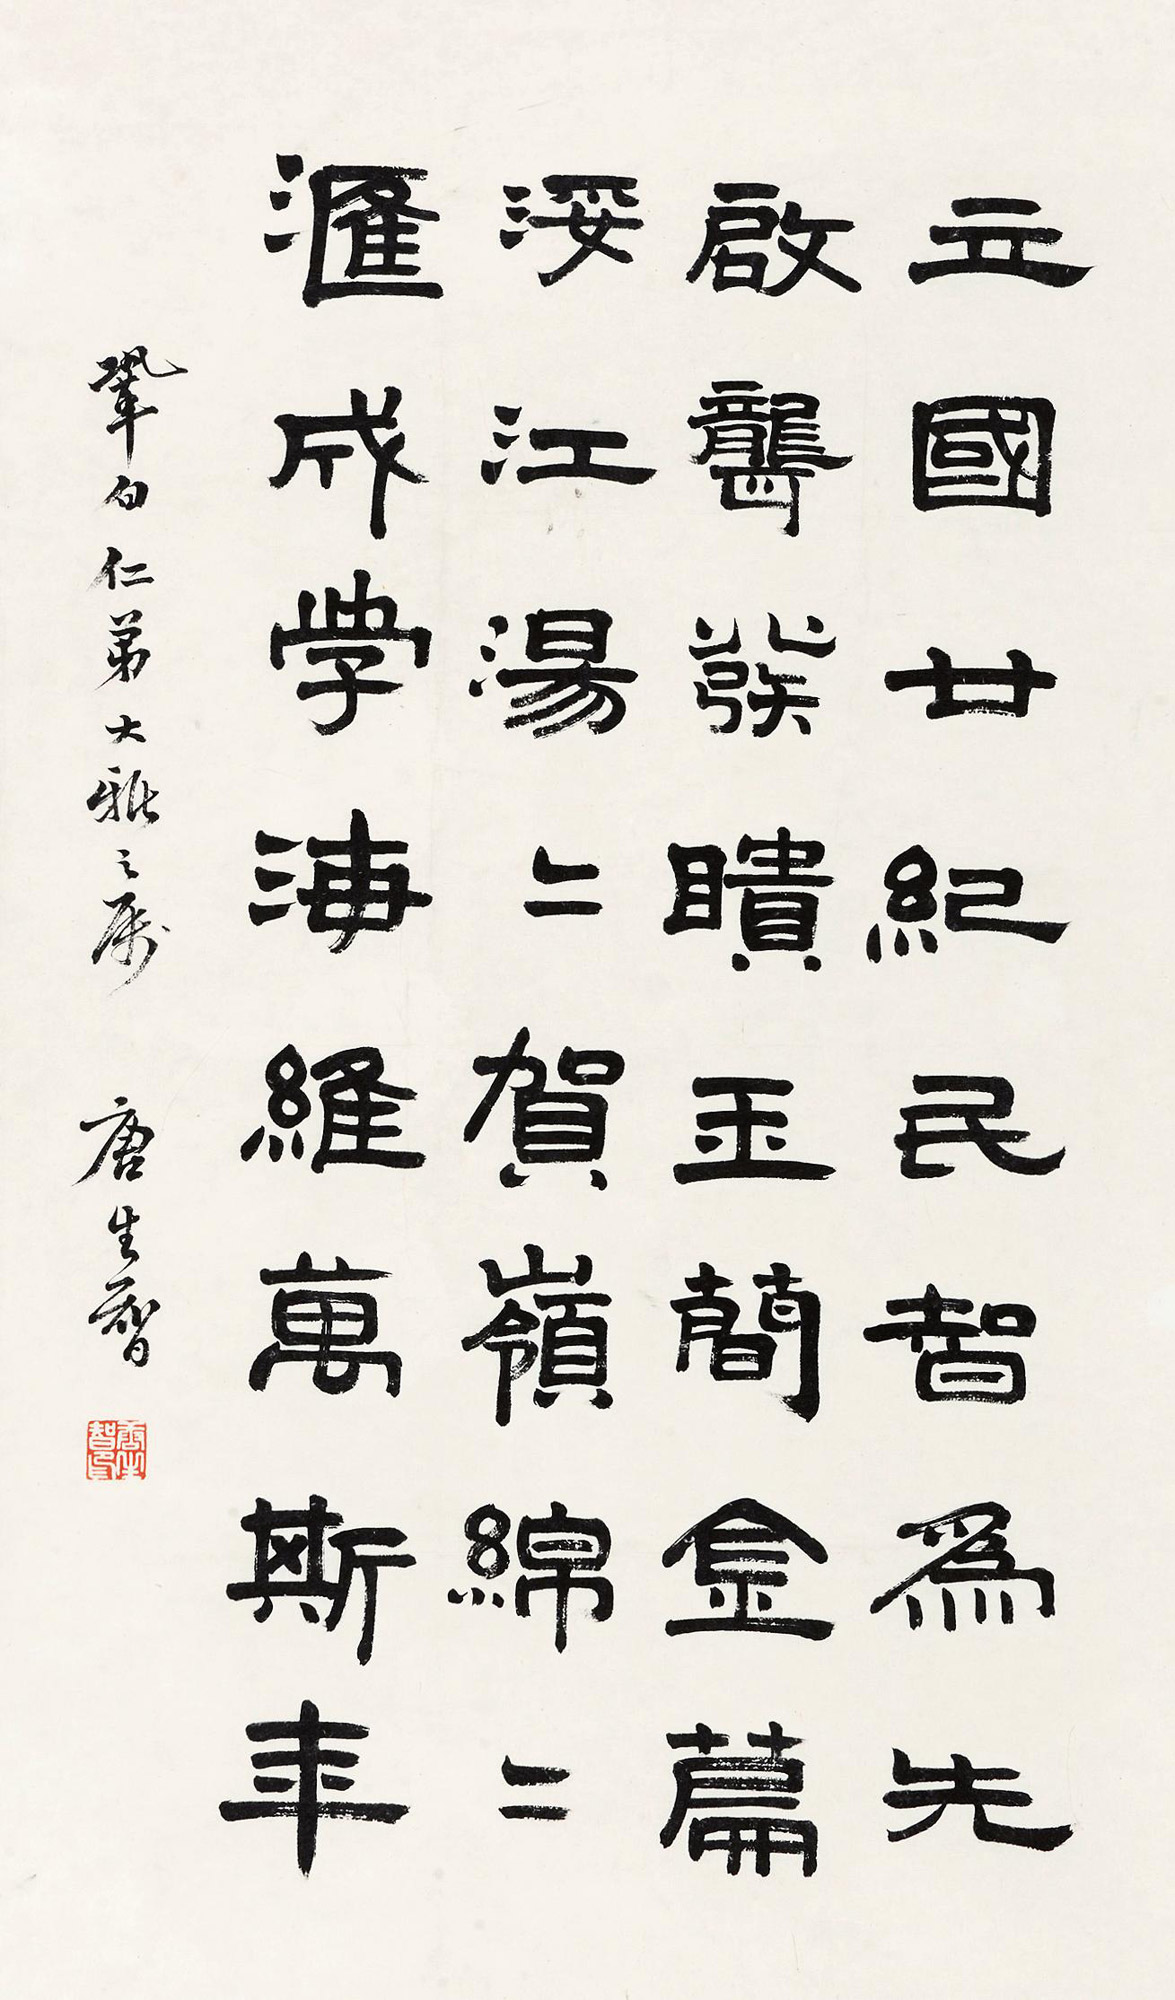 隶书题词 立轴作者唐生智 (1890～1970)拍品分类中国书画